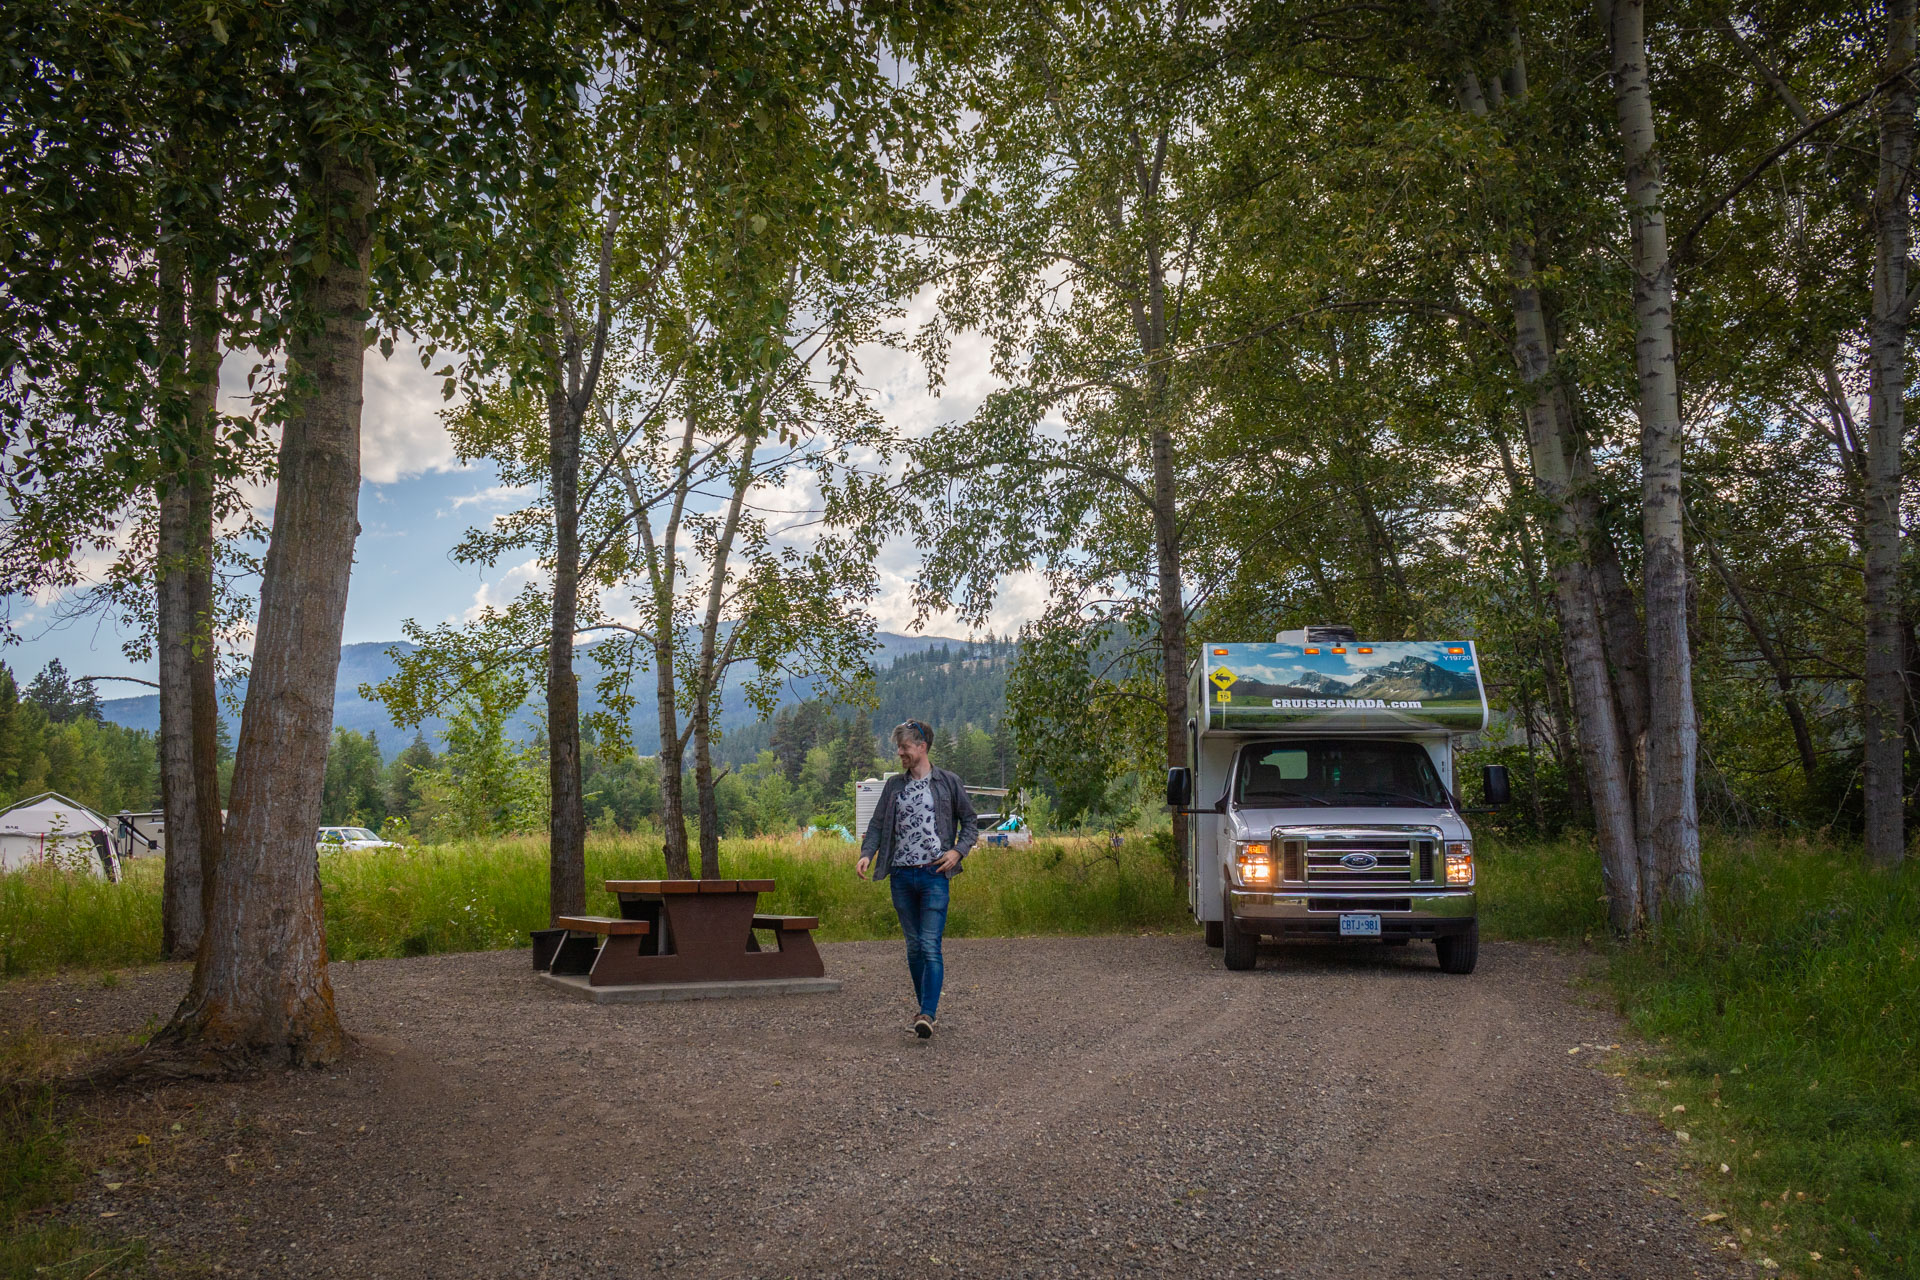 Hugo op een camperplek tussen de bomen met een camper van CruiseCanada naast hem op Fintry Campground, een mooie stop tijdens een rondreis Canada met camper